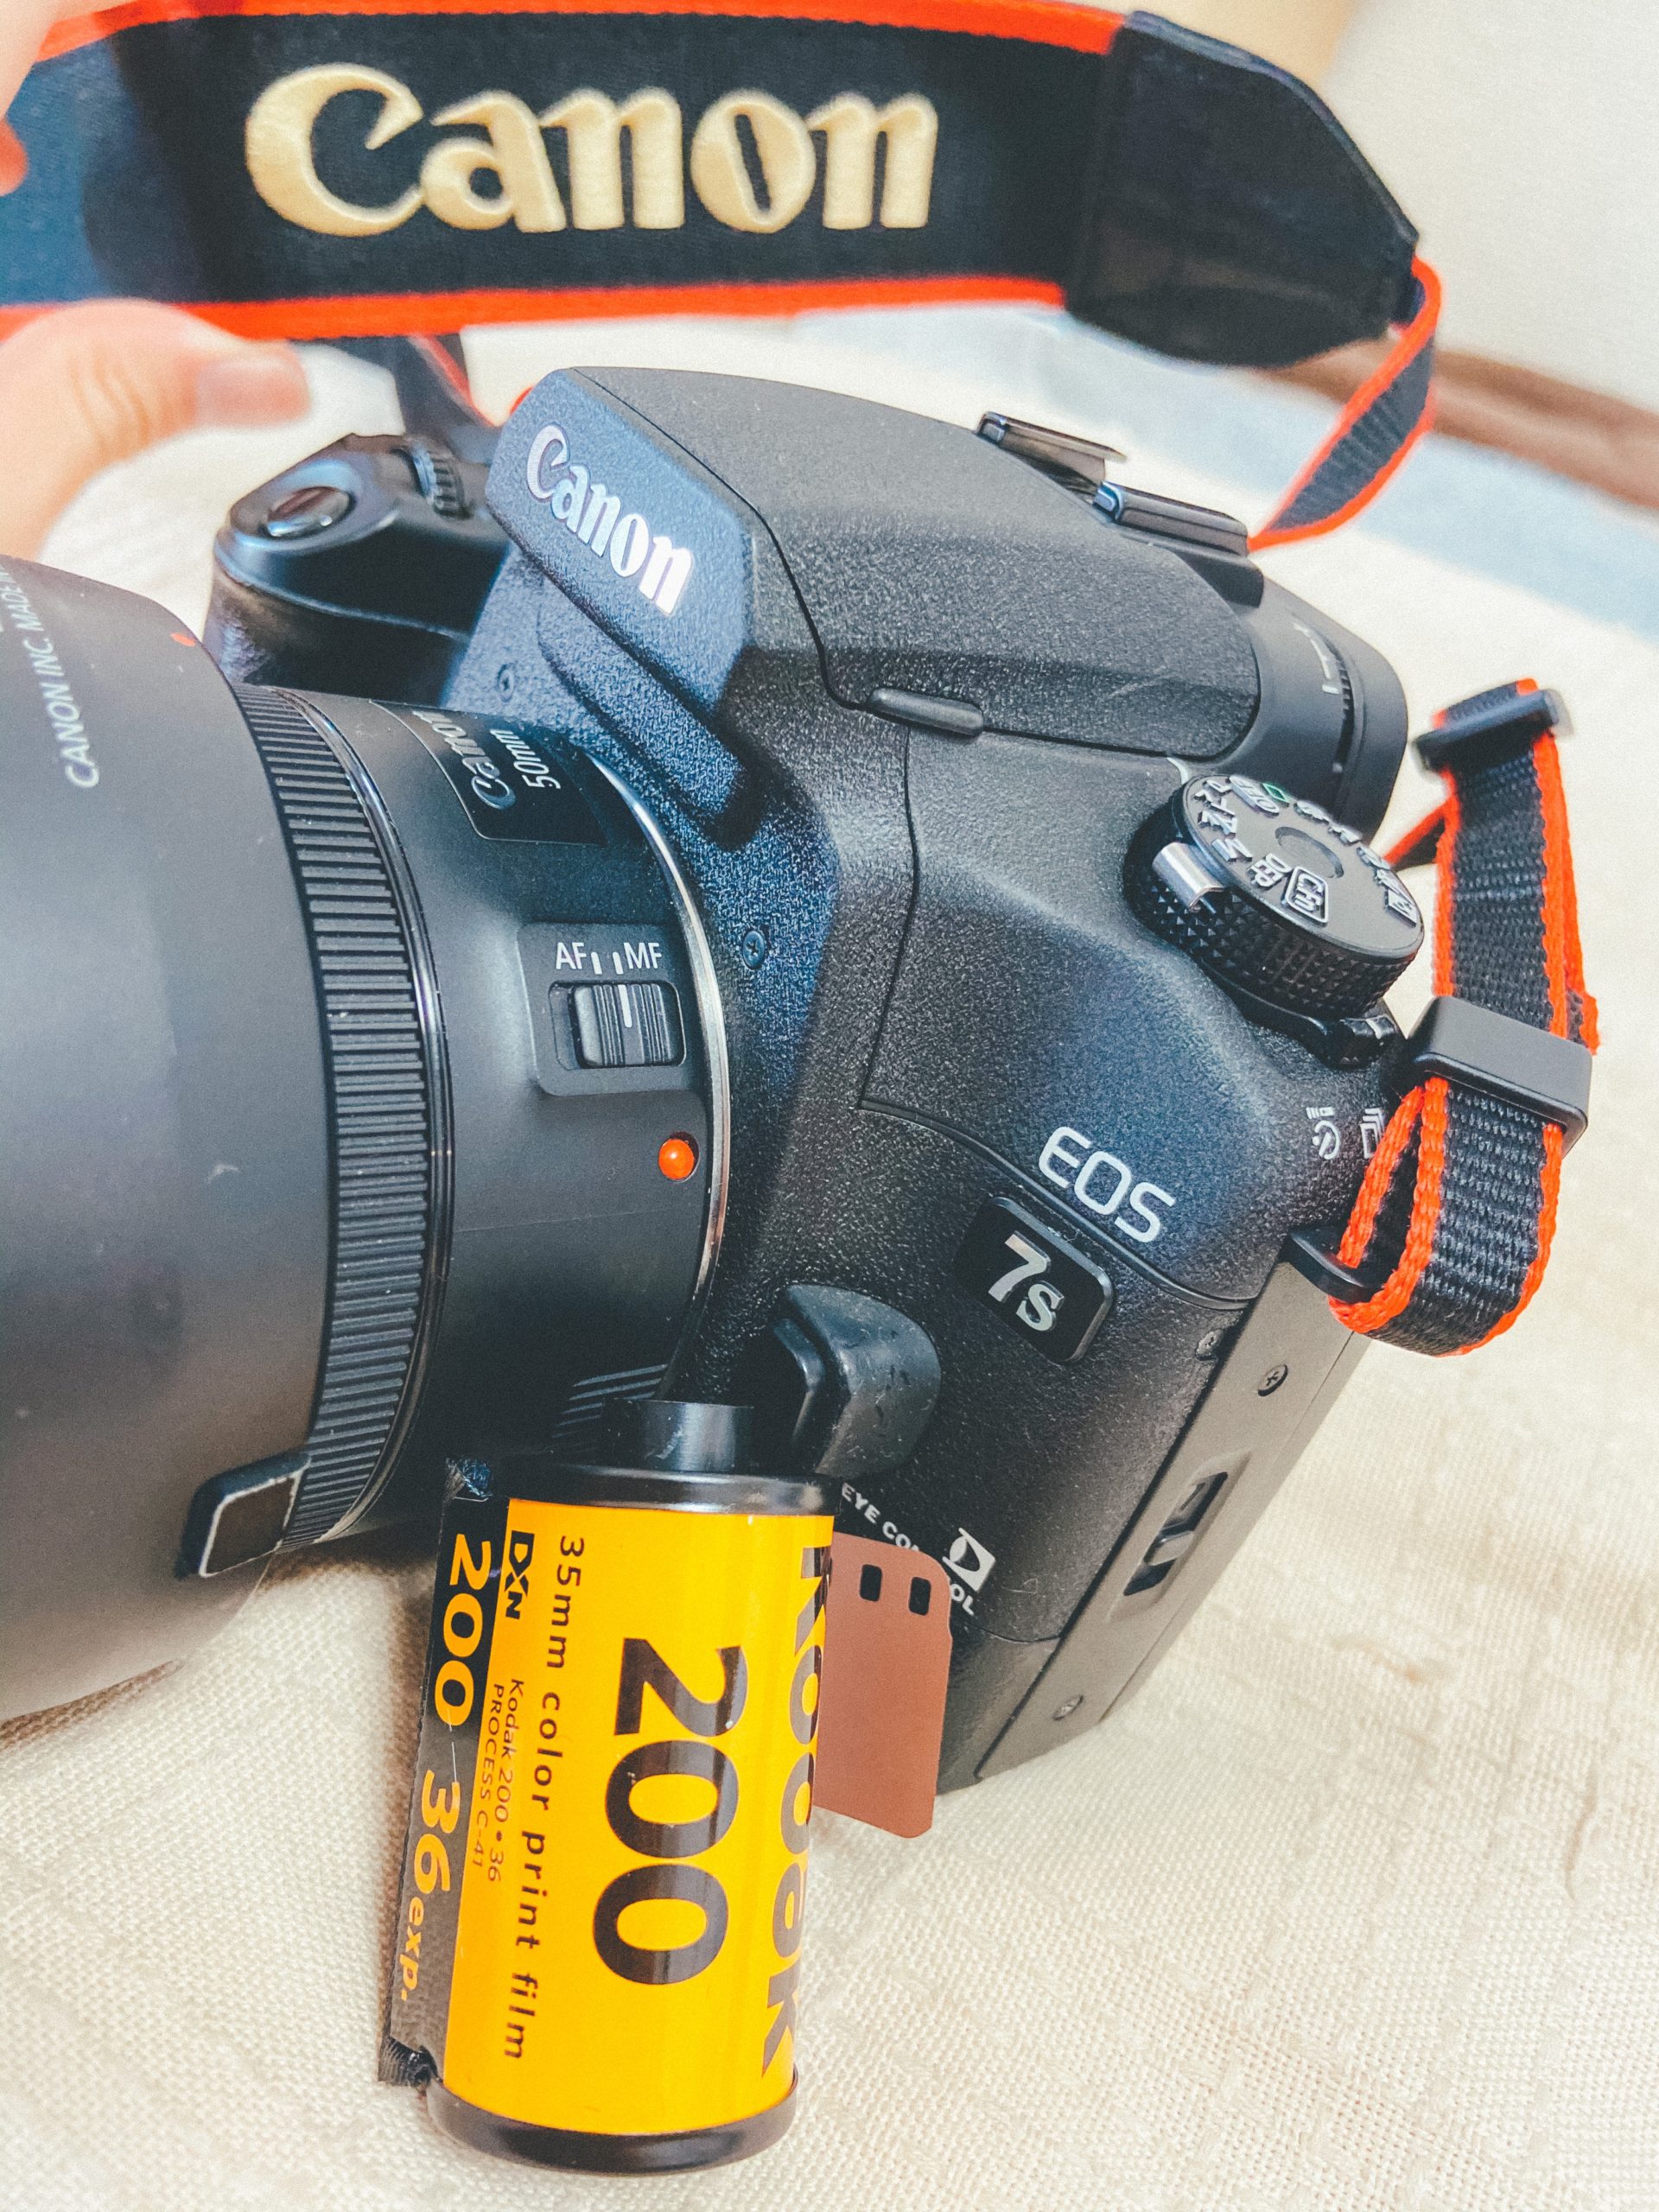 覚書】 Canon EOS 7sのカスタムファンクション一覧と視線入力の使い方 